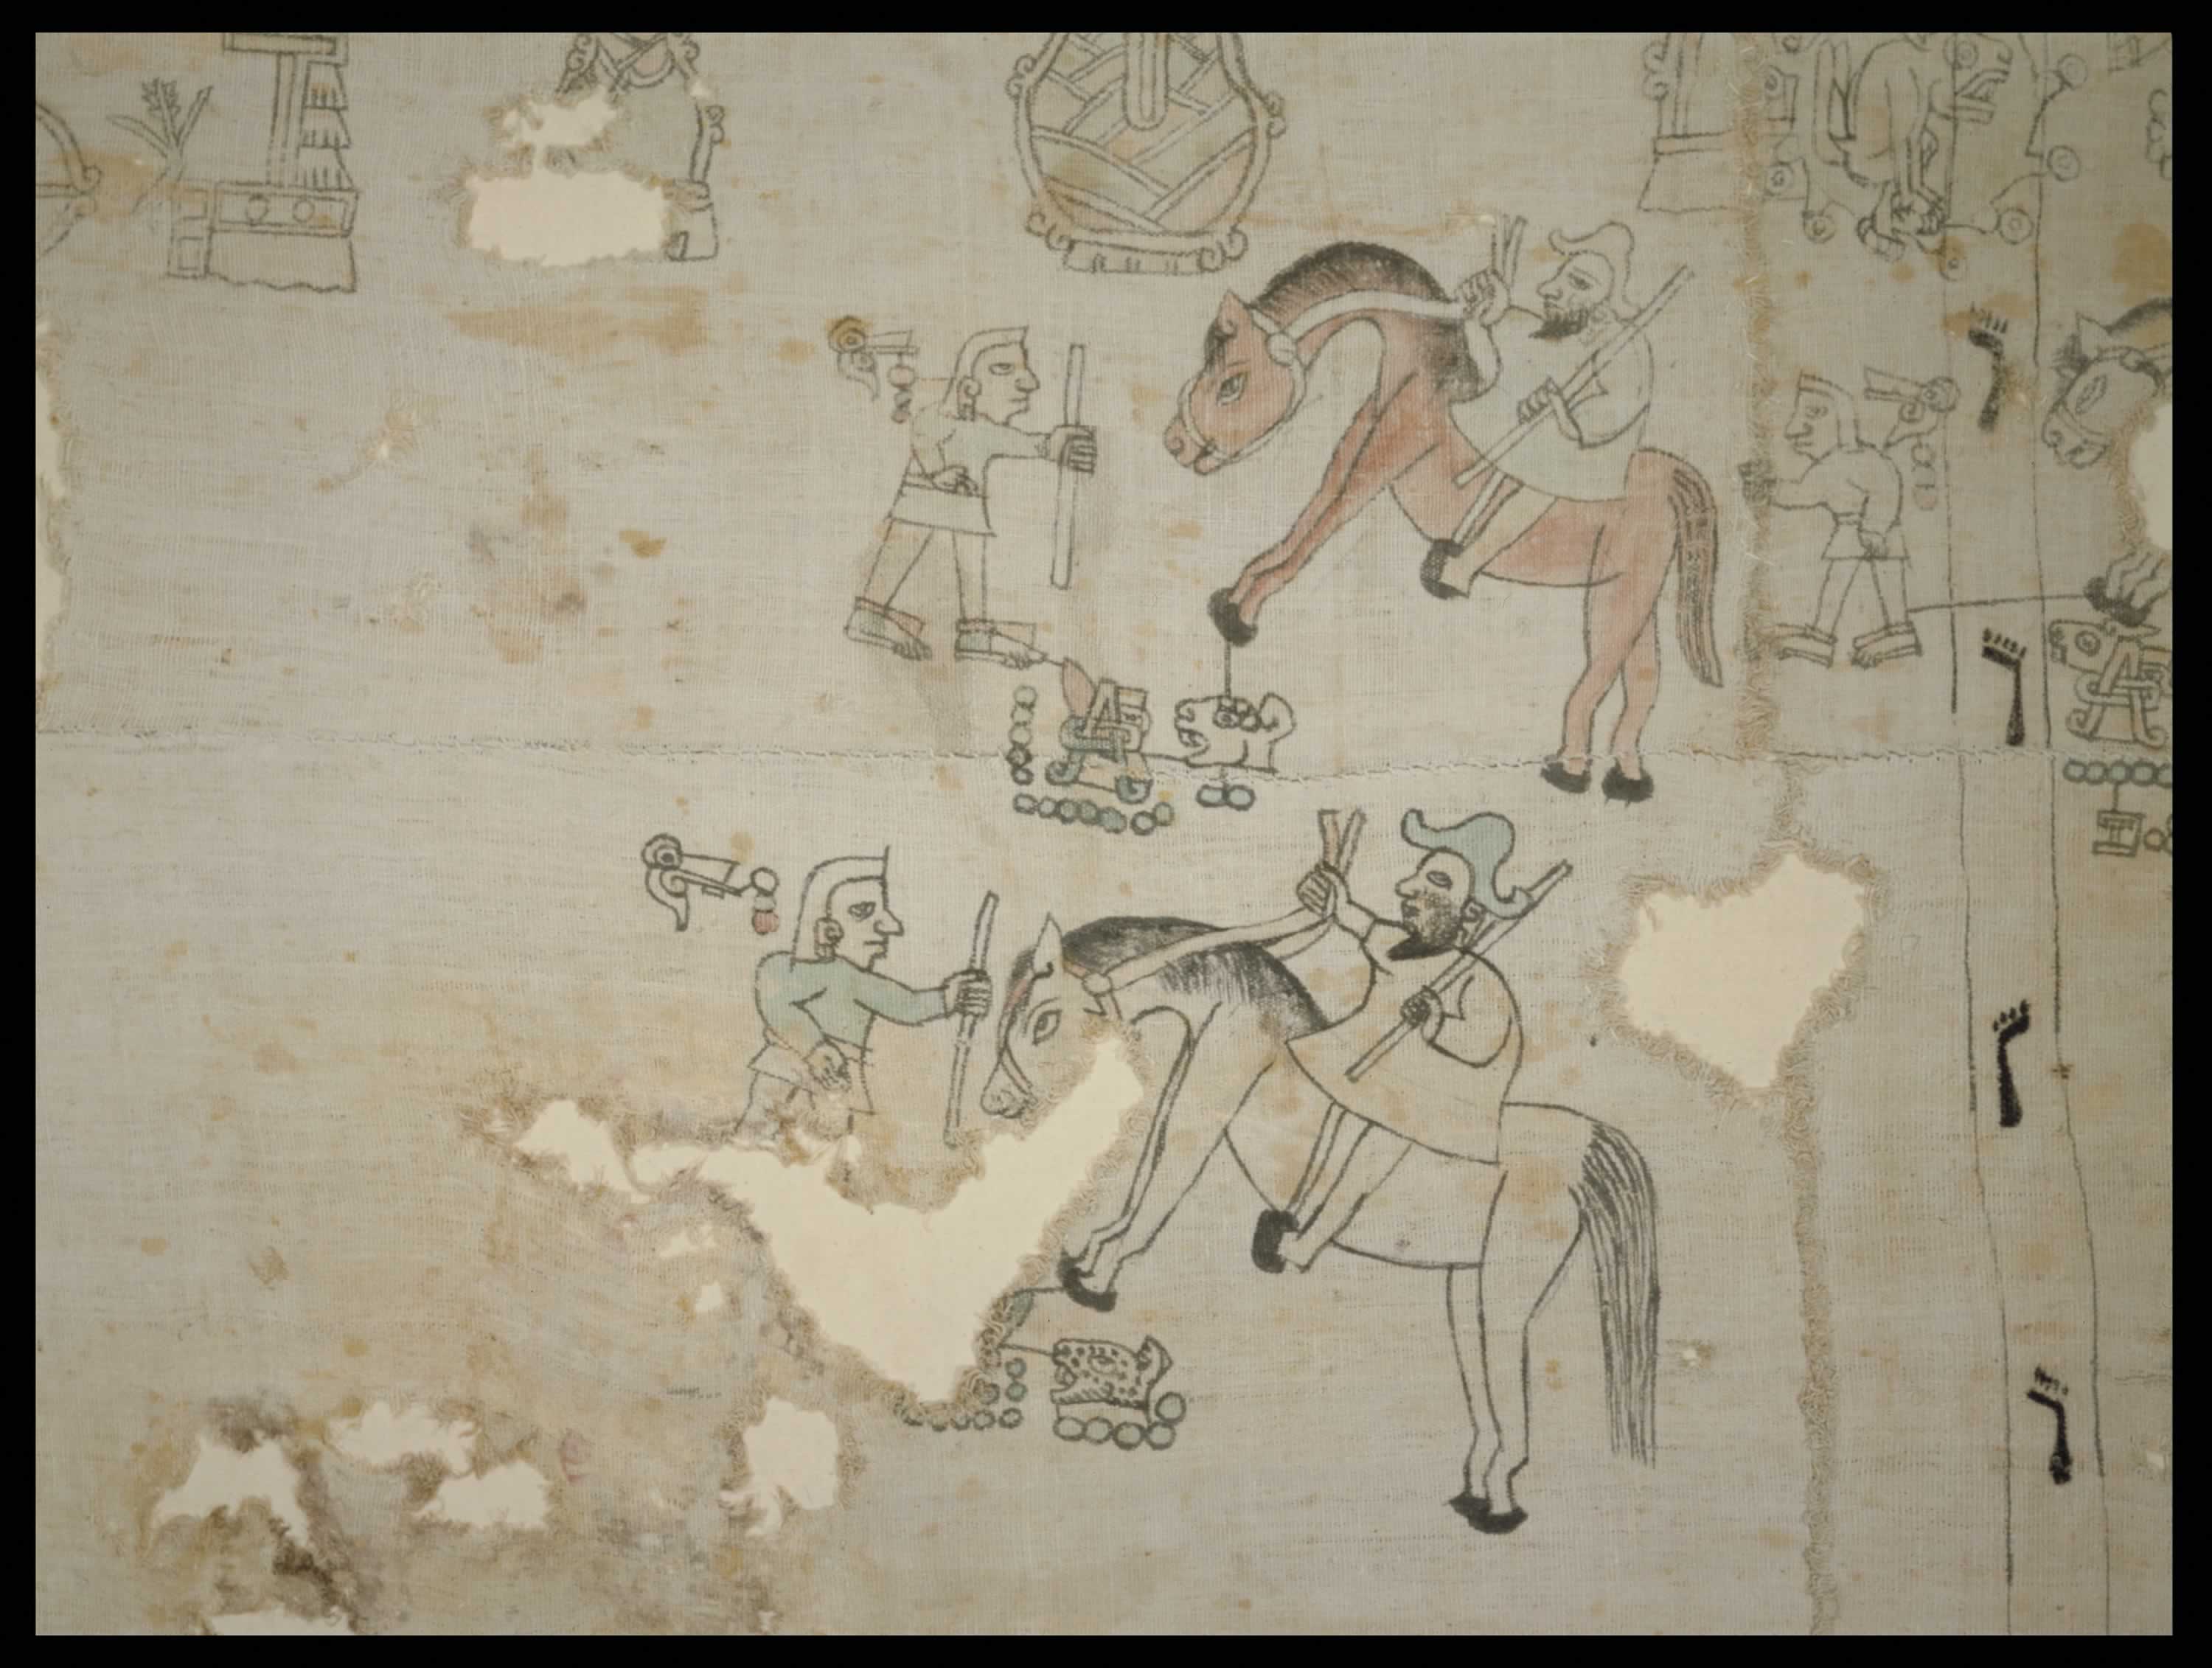 Fragmento del Lienzo de Coixtlahuaca, siglo XVI. Biblioteca Nacional de Antropología e Historia, Ciudad de México.